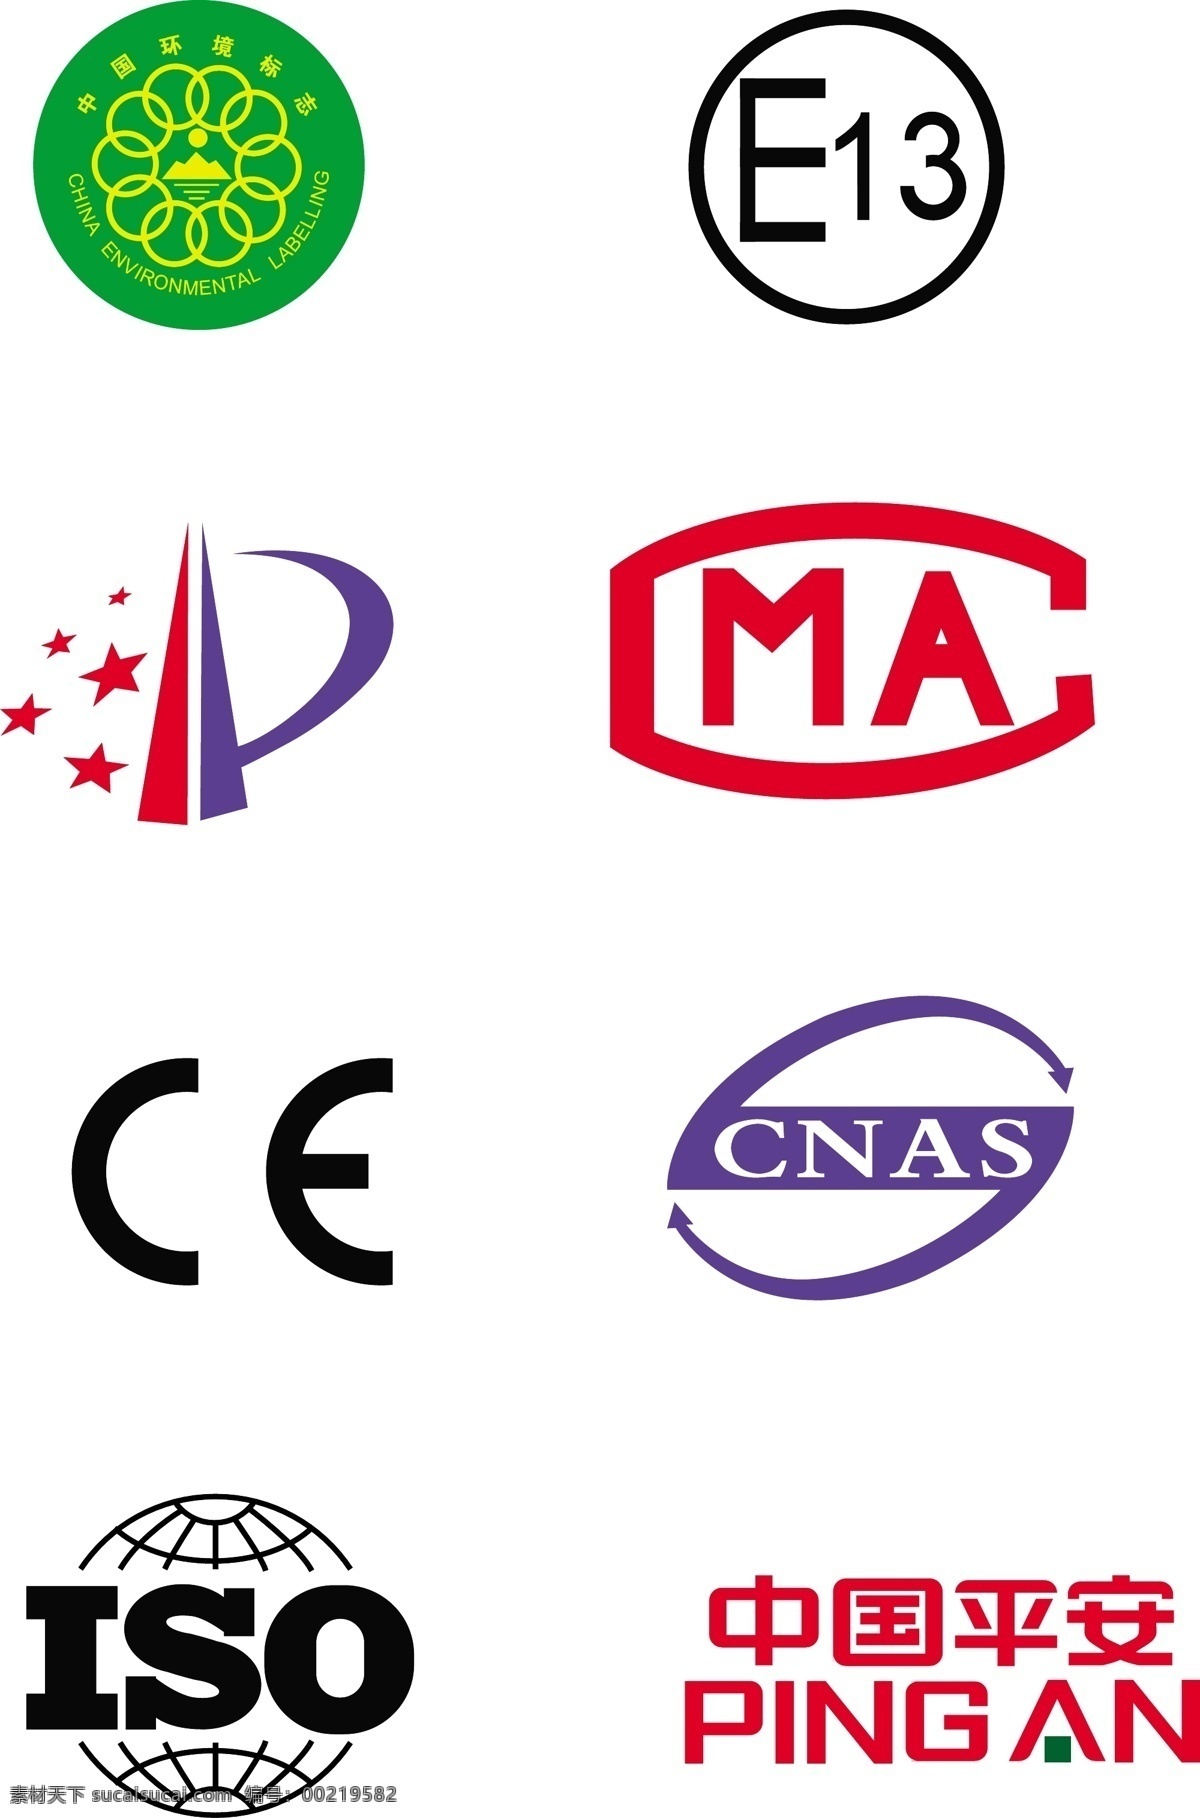 常用小图标 e13 ce iso cma 专利 中国平安 logo 矢量 文件 小图标 标识标志图标